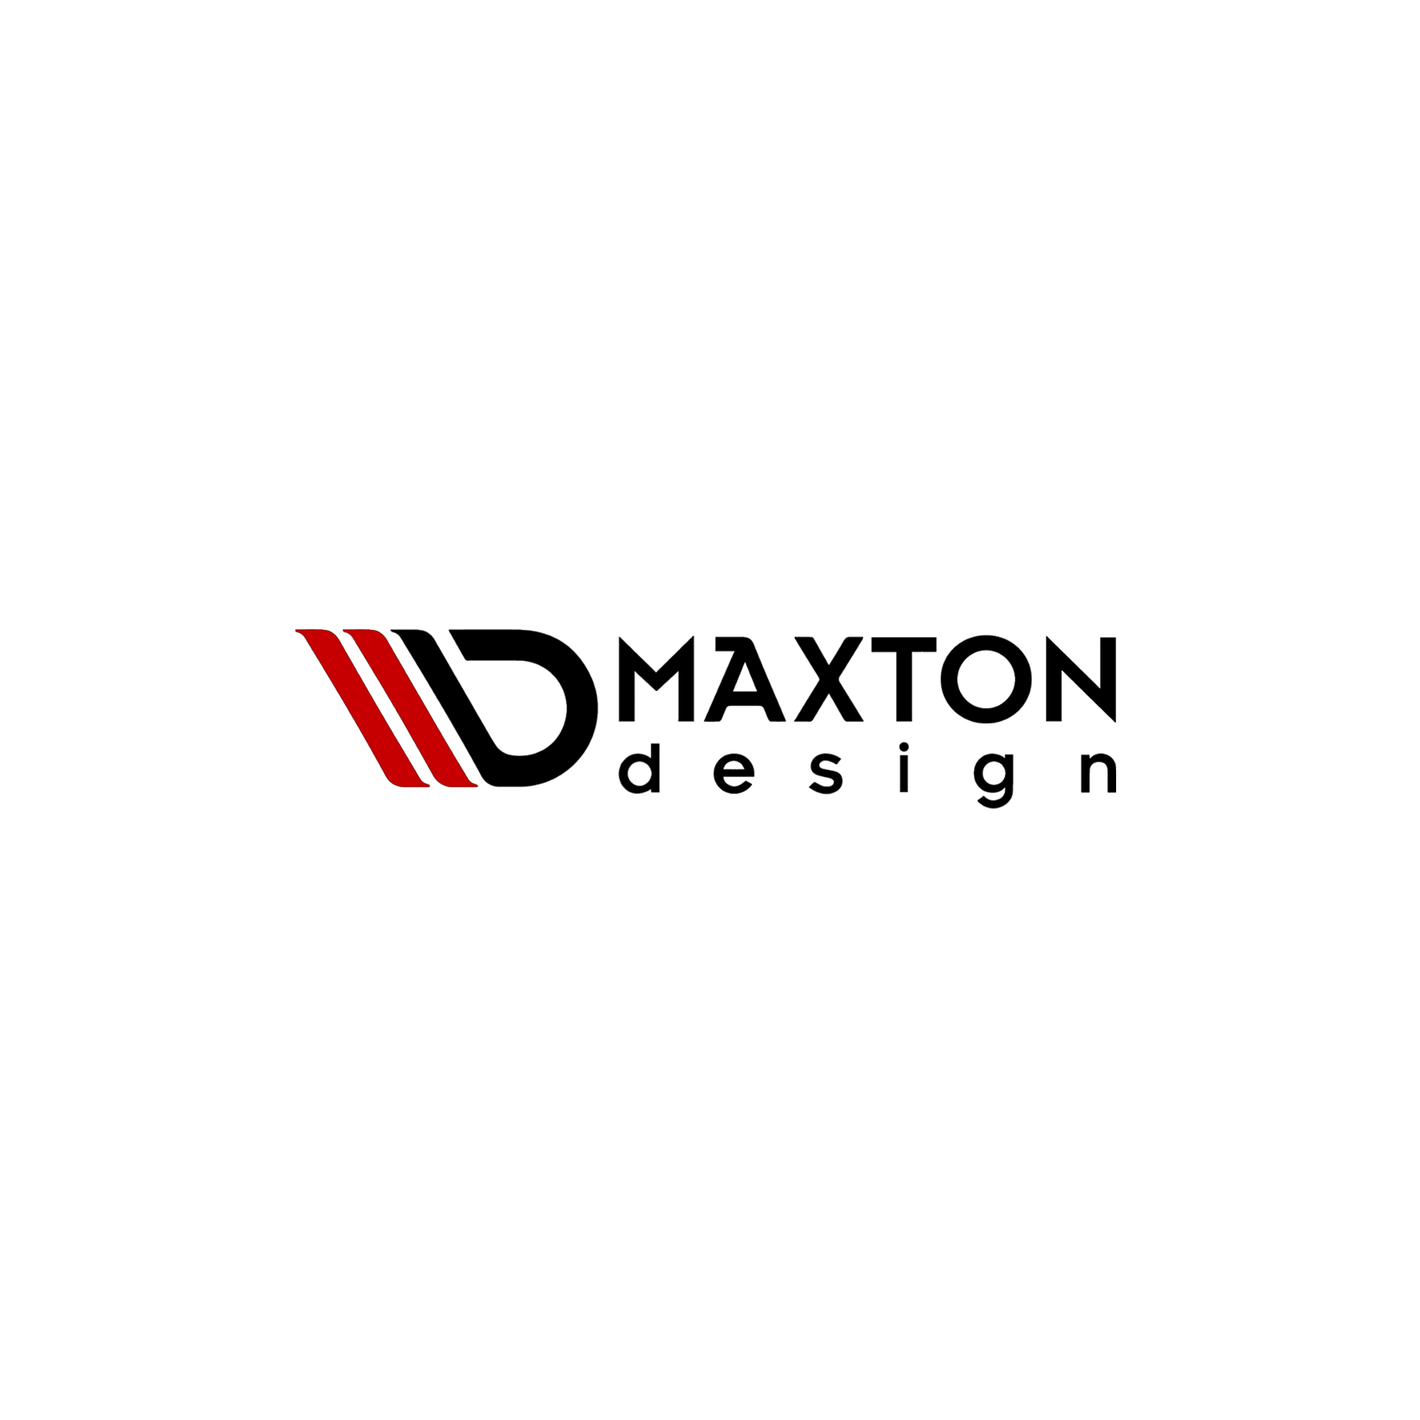 All Maxton Design